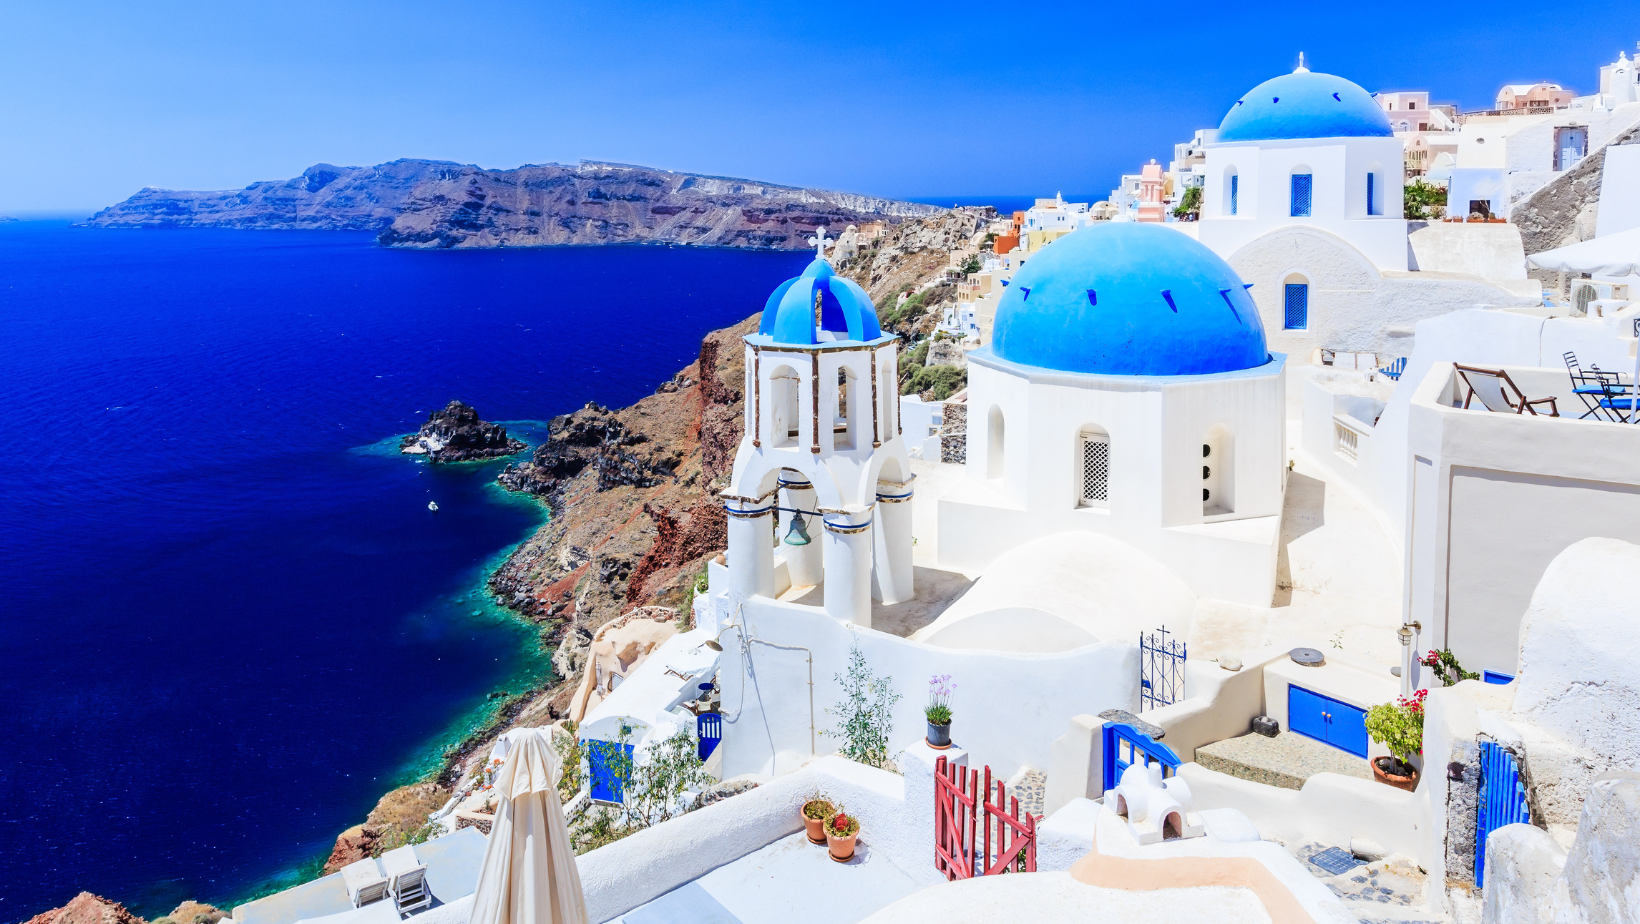 נוף ציורי של יוון - עם כיפות כחולות וחופים